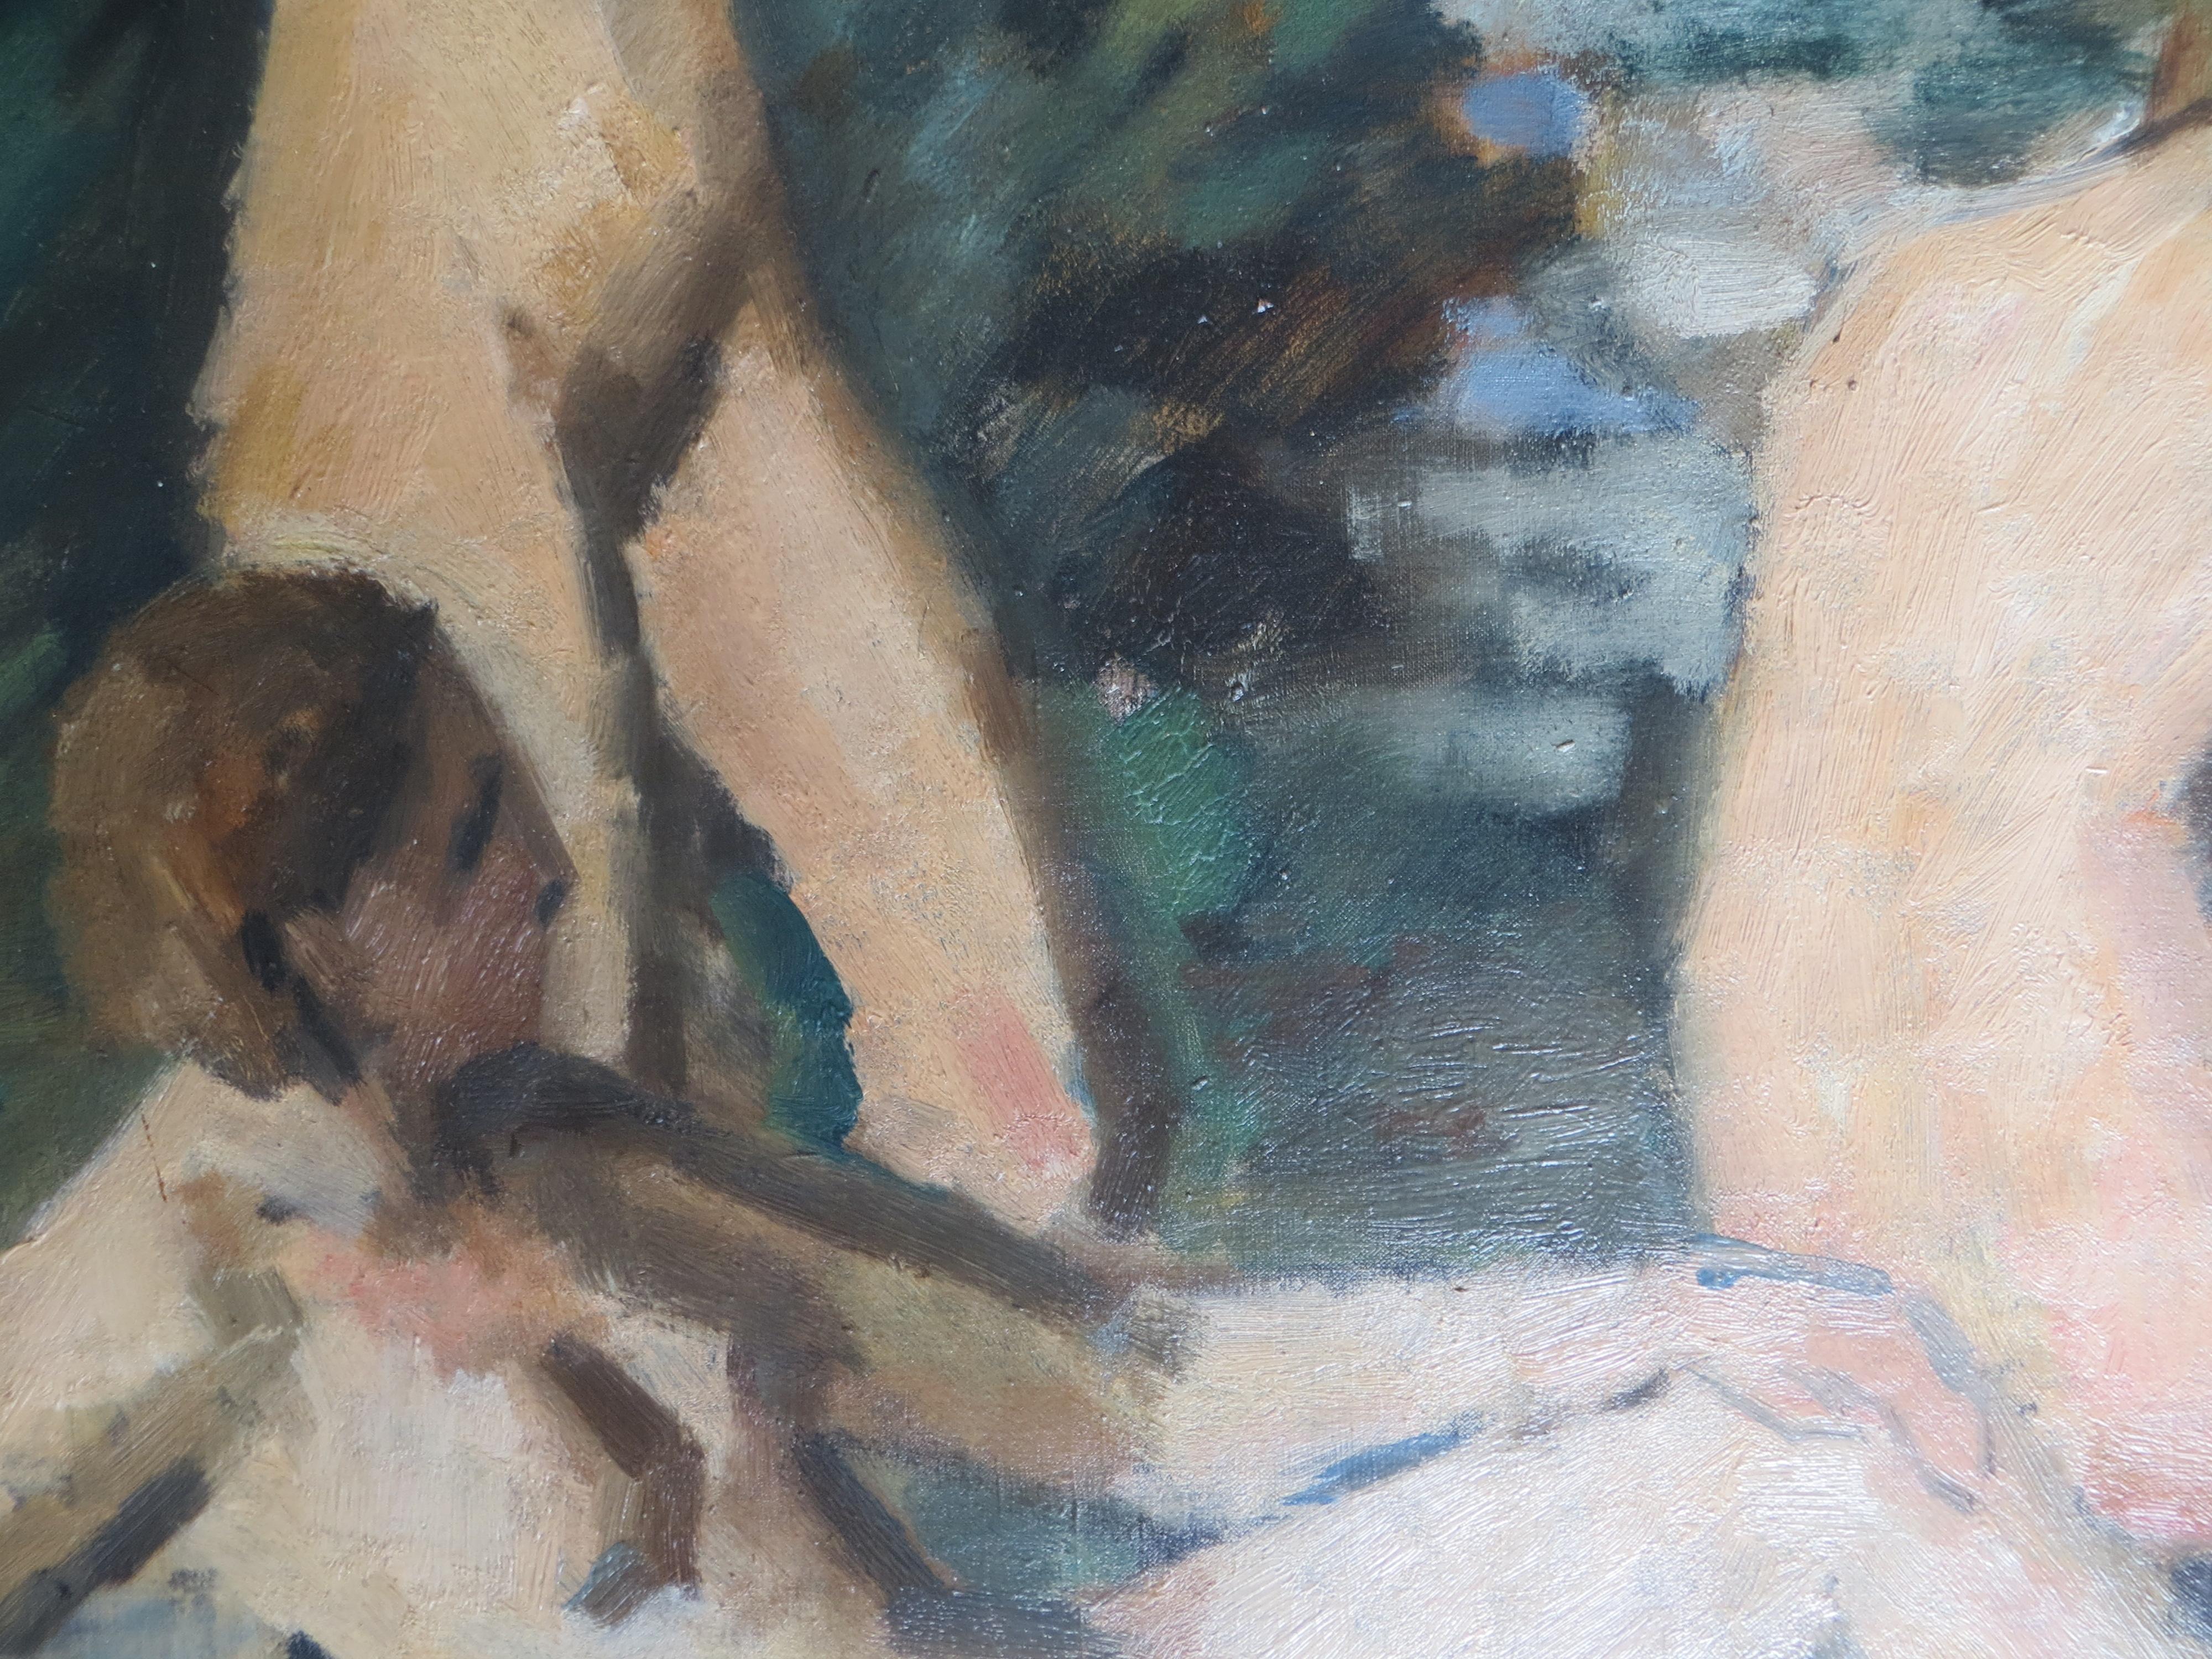 Aktstudie der Drei Grazien, André Favory zugeschrieben, unsigniert, nach Cezanne.
Ausgezeichneter Zustand, gerahmt.